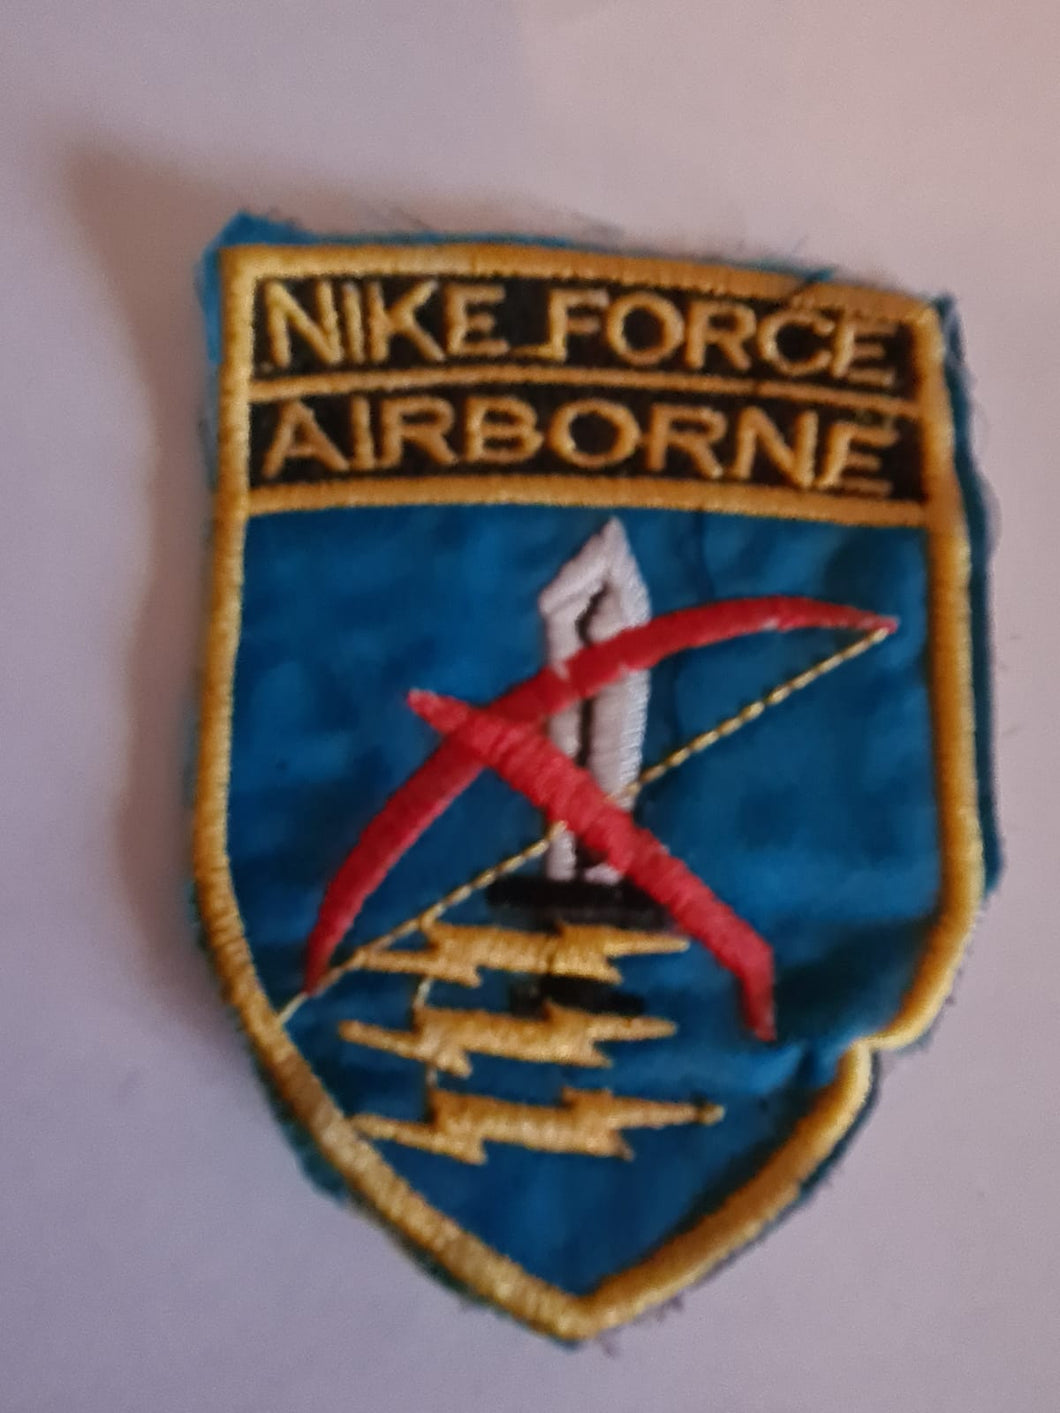 Vietnam war era Mike force Airborne patch